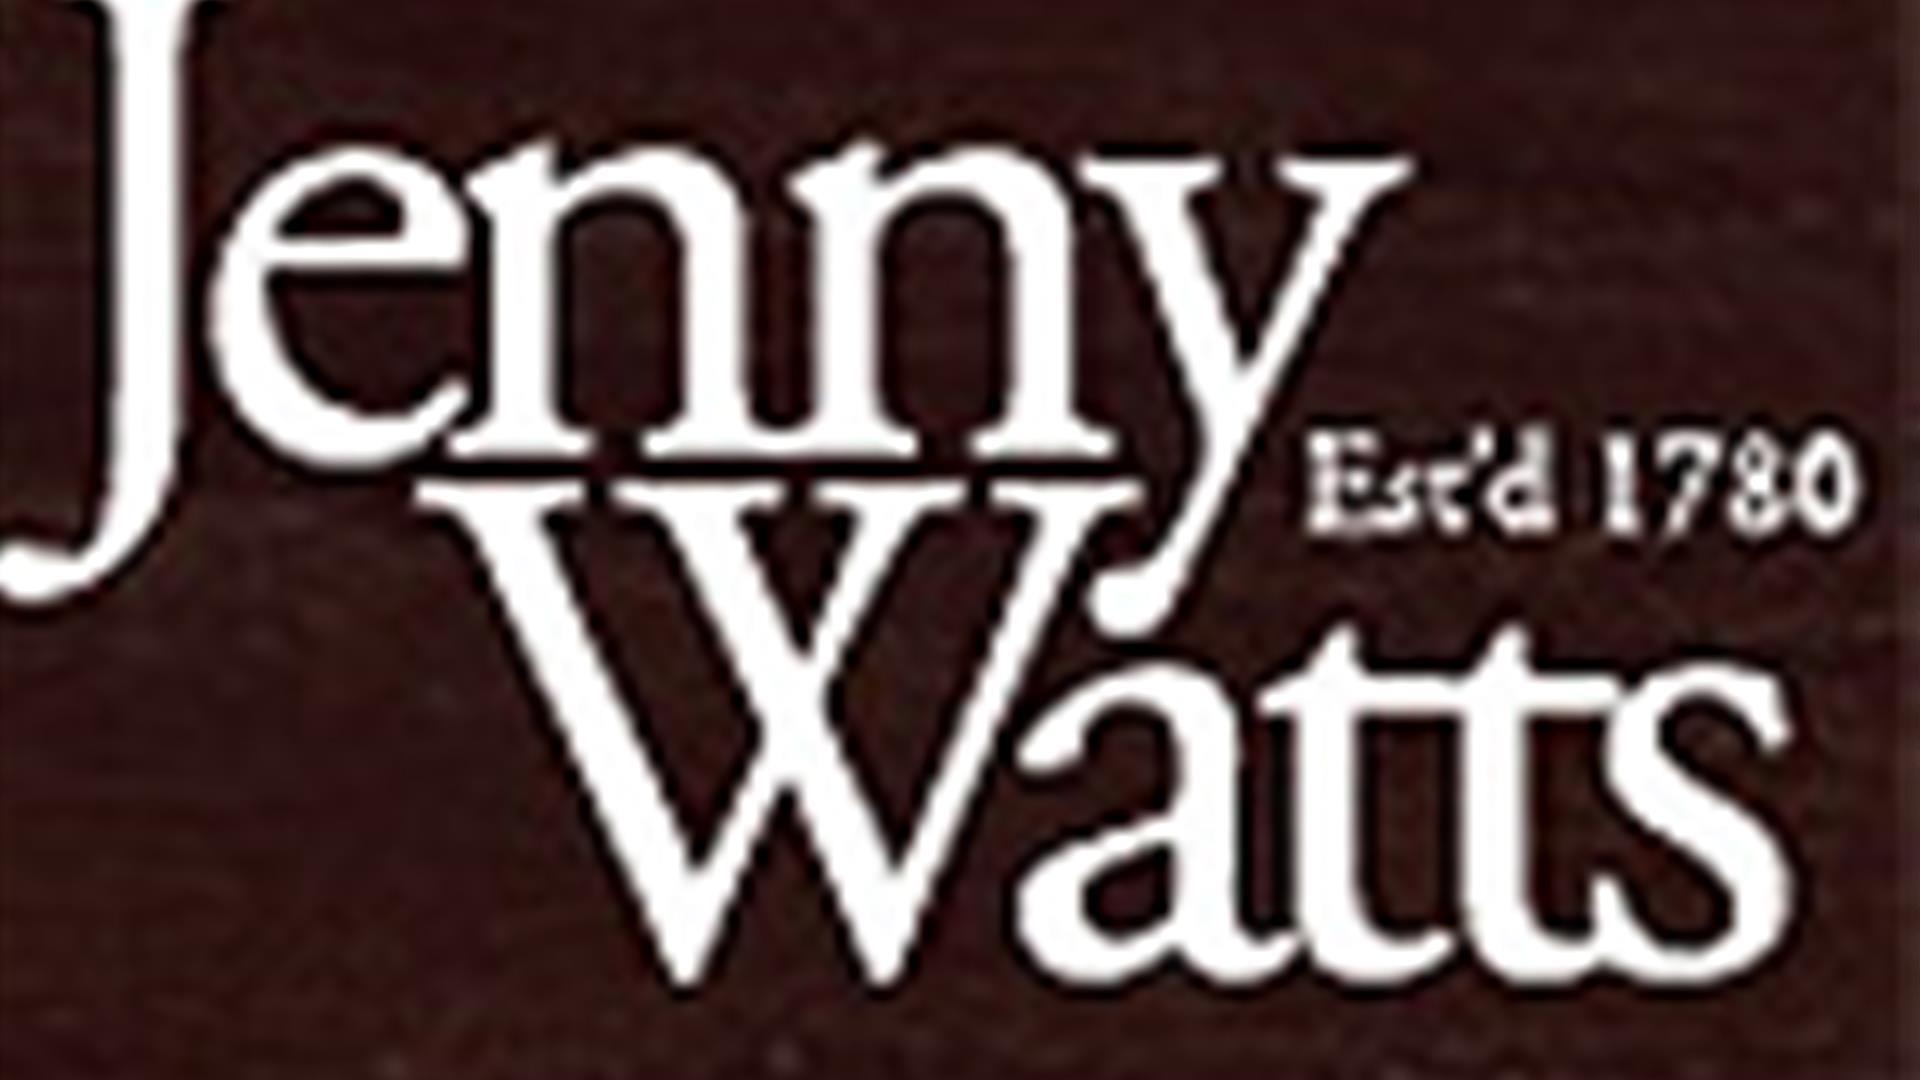 Jenny Watts logo